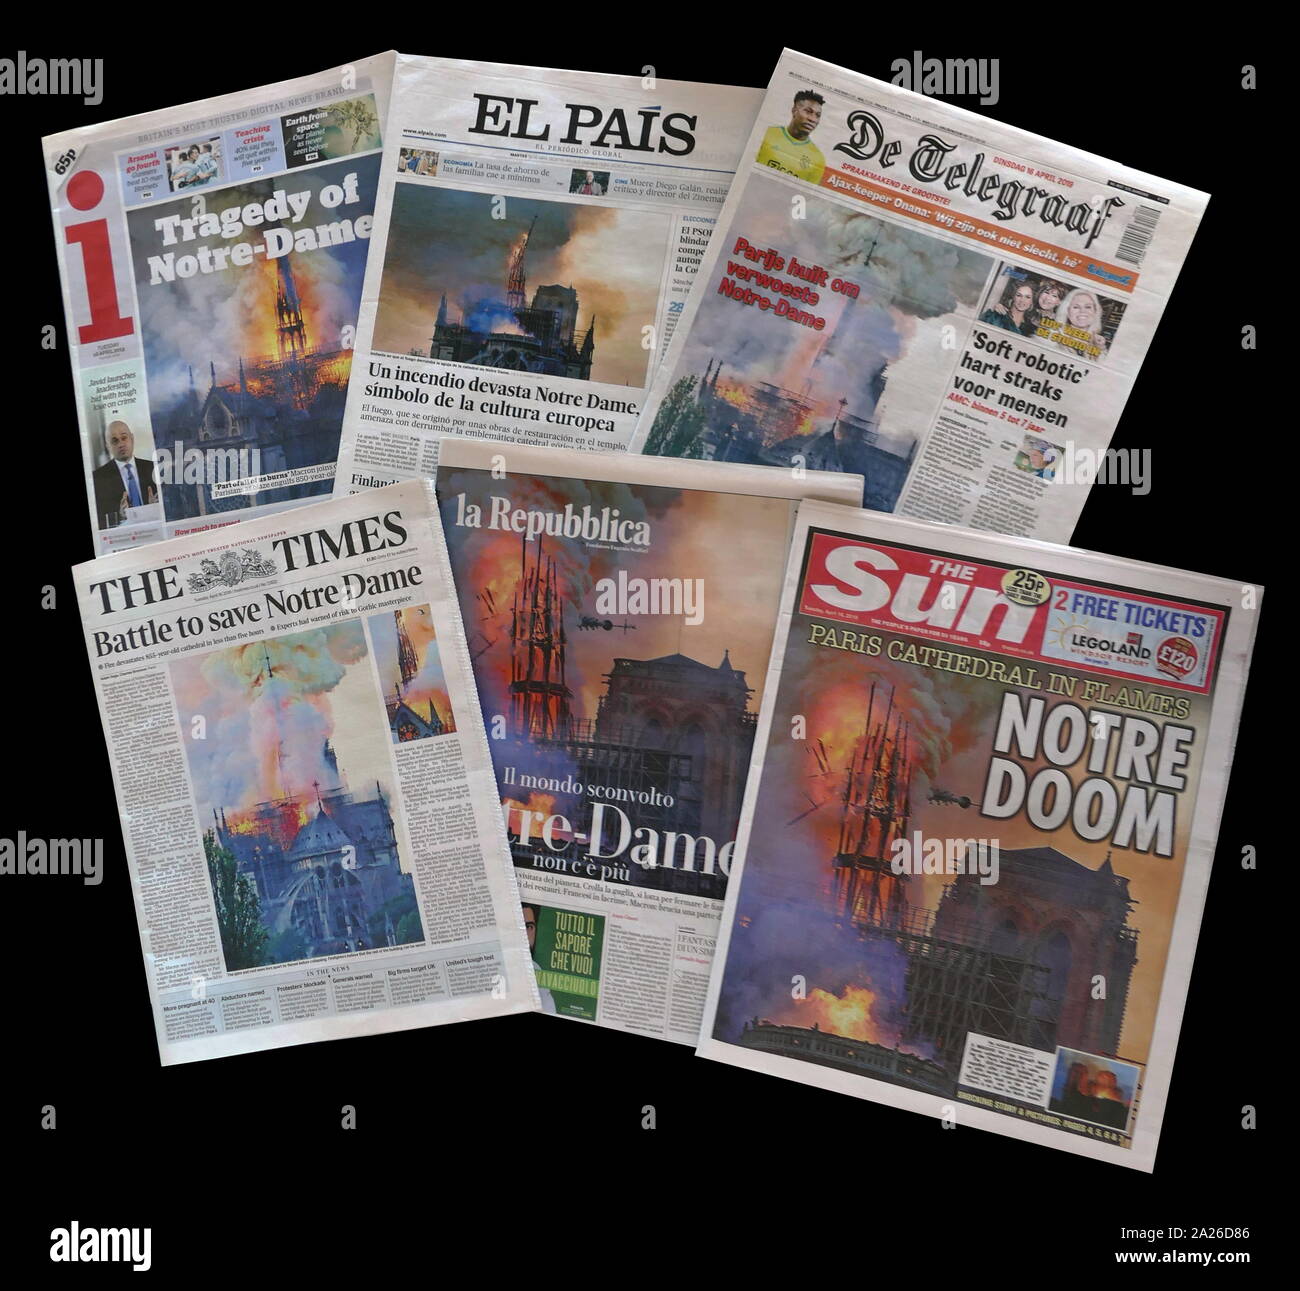 Vergleichsmessung Zeitung Vorderseiten in ganz Europa (Großbritannien, Spanien, Italien, die Niederlande), die Auswirkungen des Brandes, der Notre Dame Kathedrale beschädigt Stockfoto